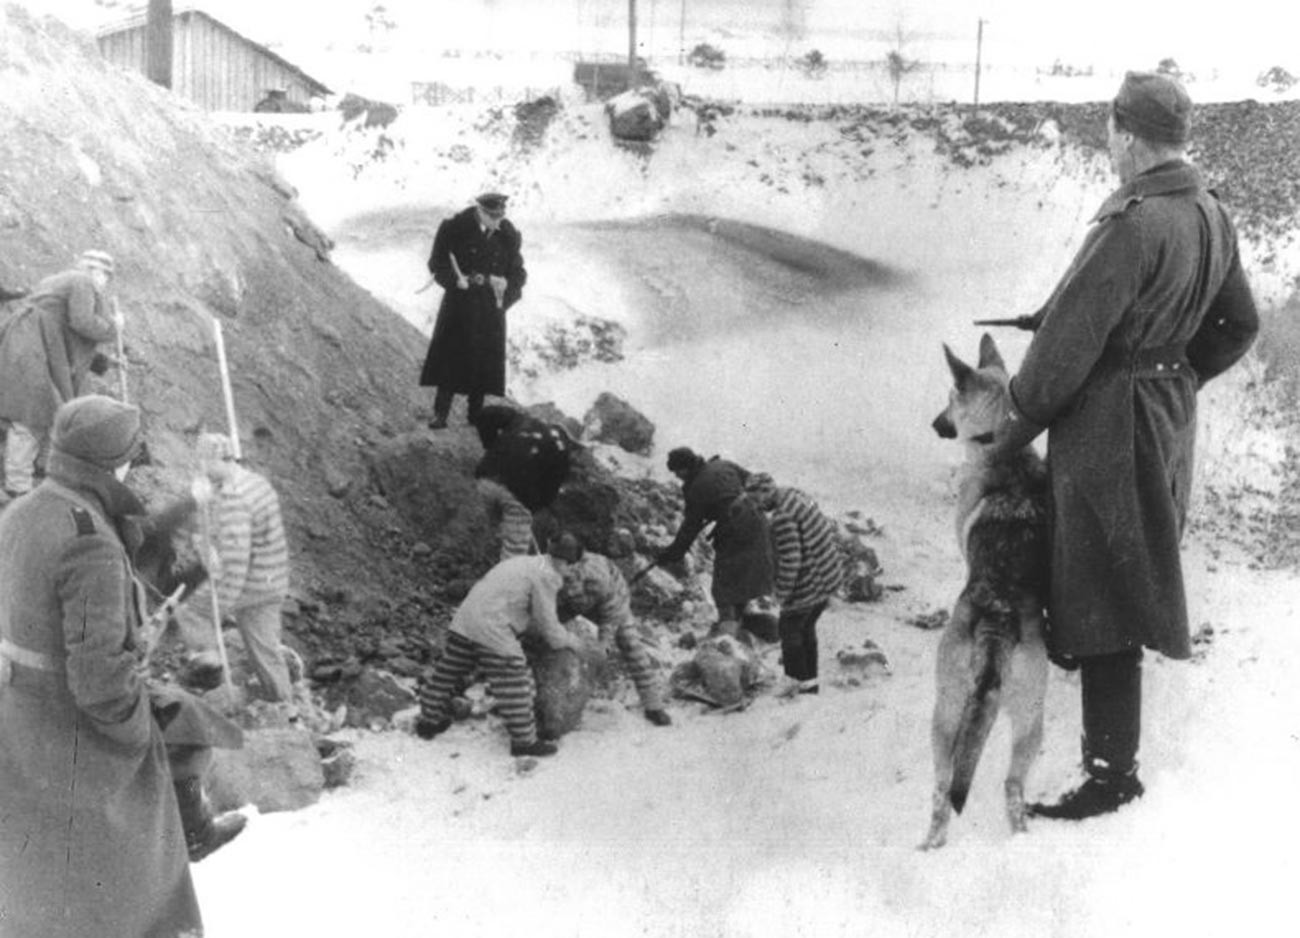 Sovjetski vojni ujetniki taborišča Stalag 352